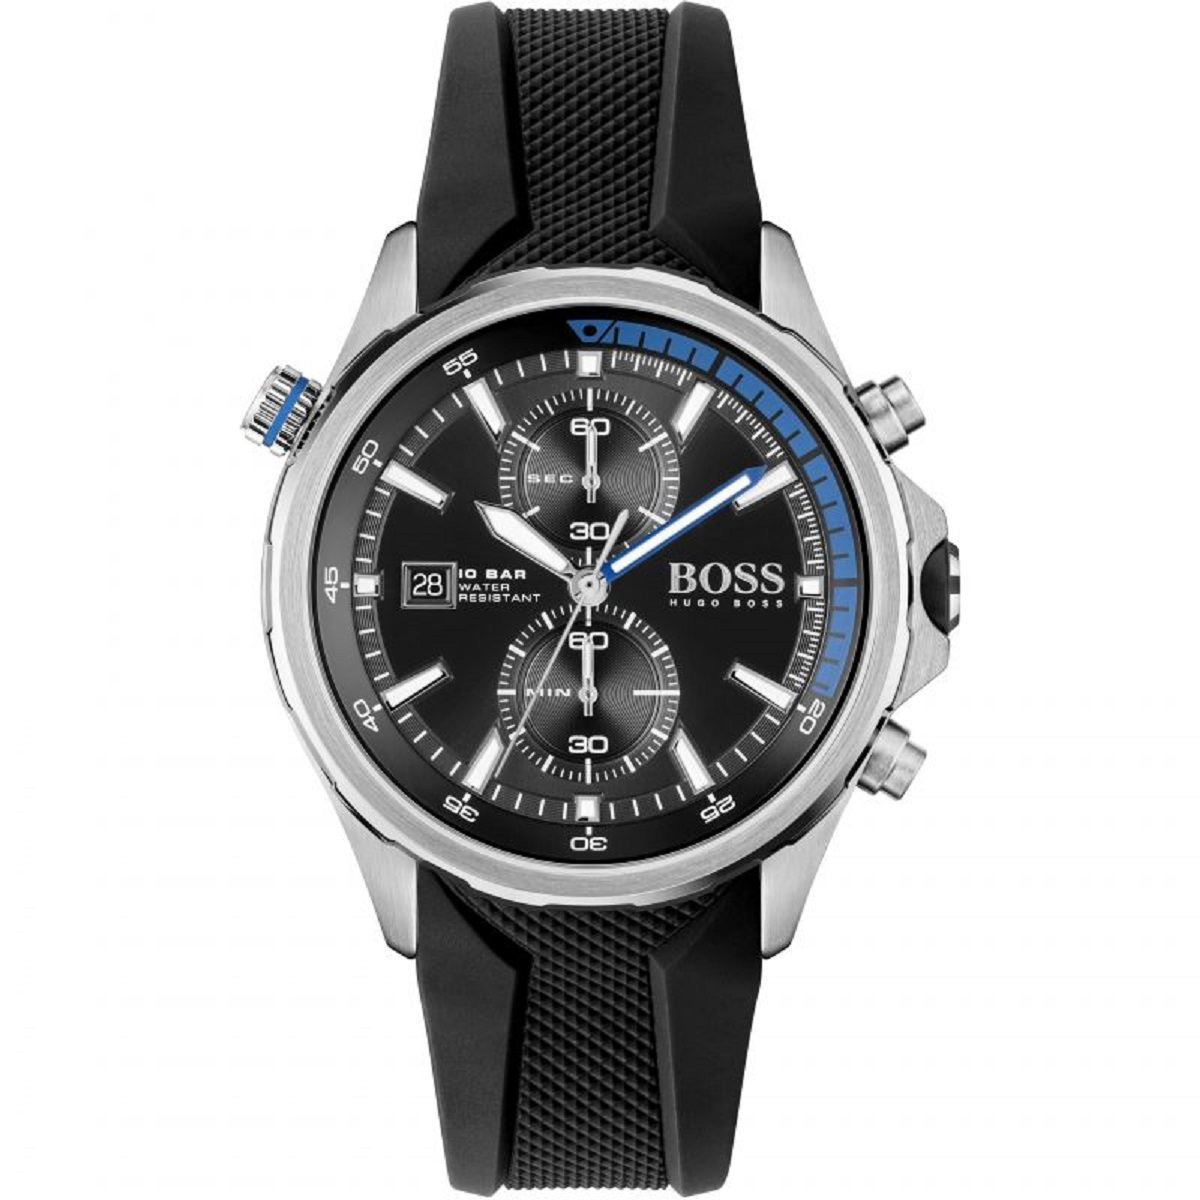 1513820-original-hugo-boss-watch-rubber-black-color-egypt